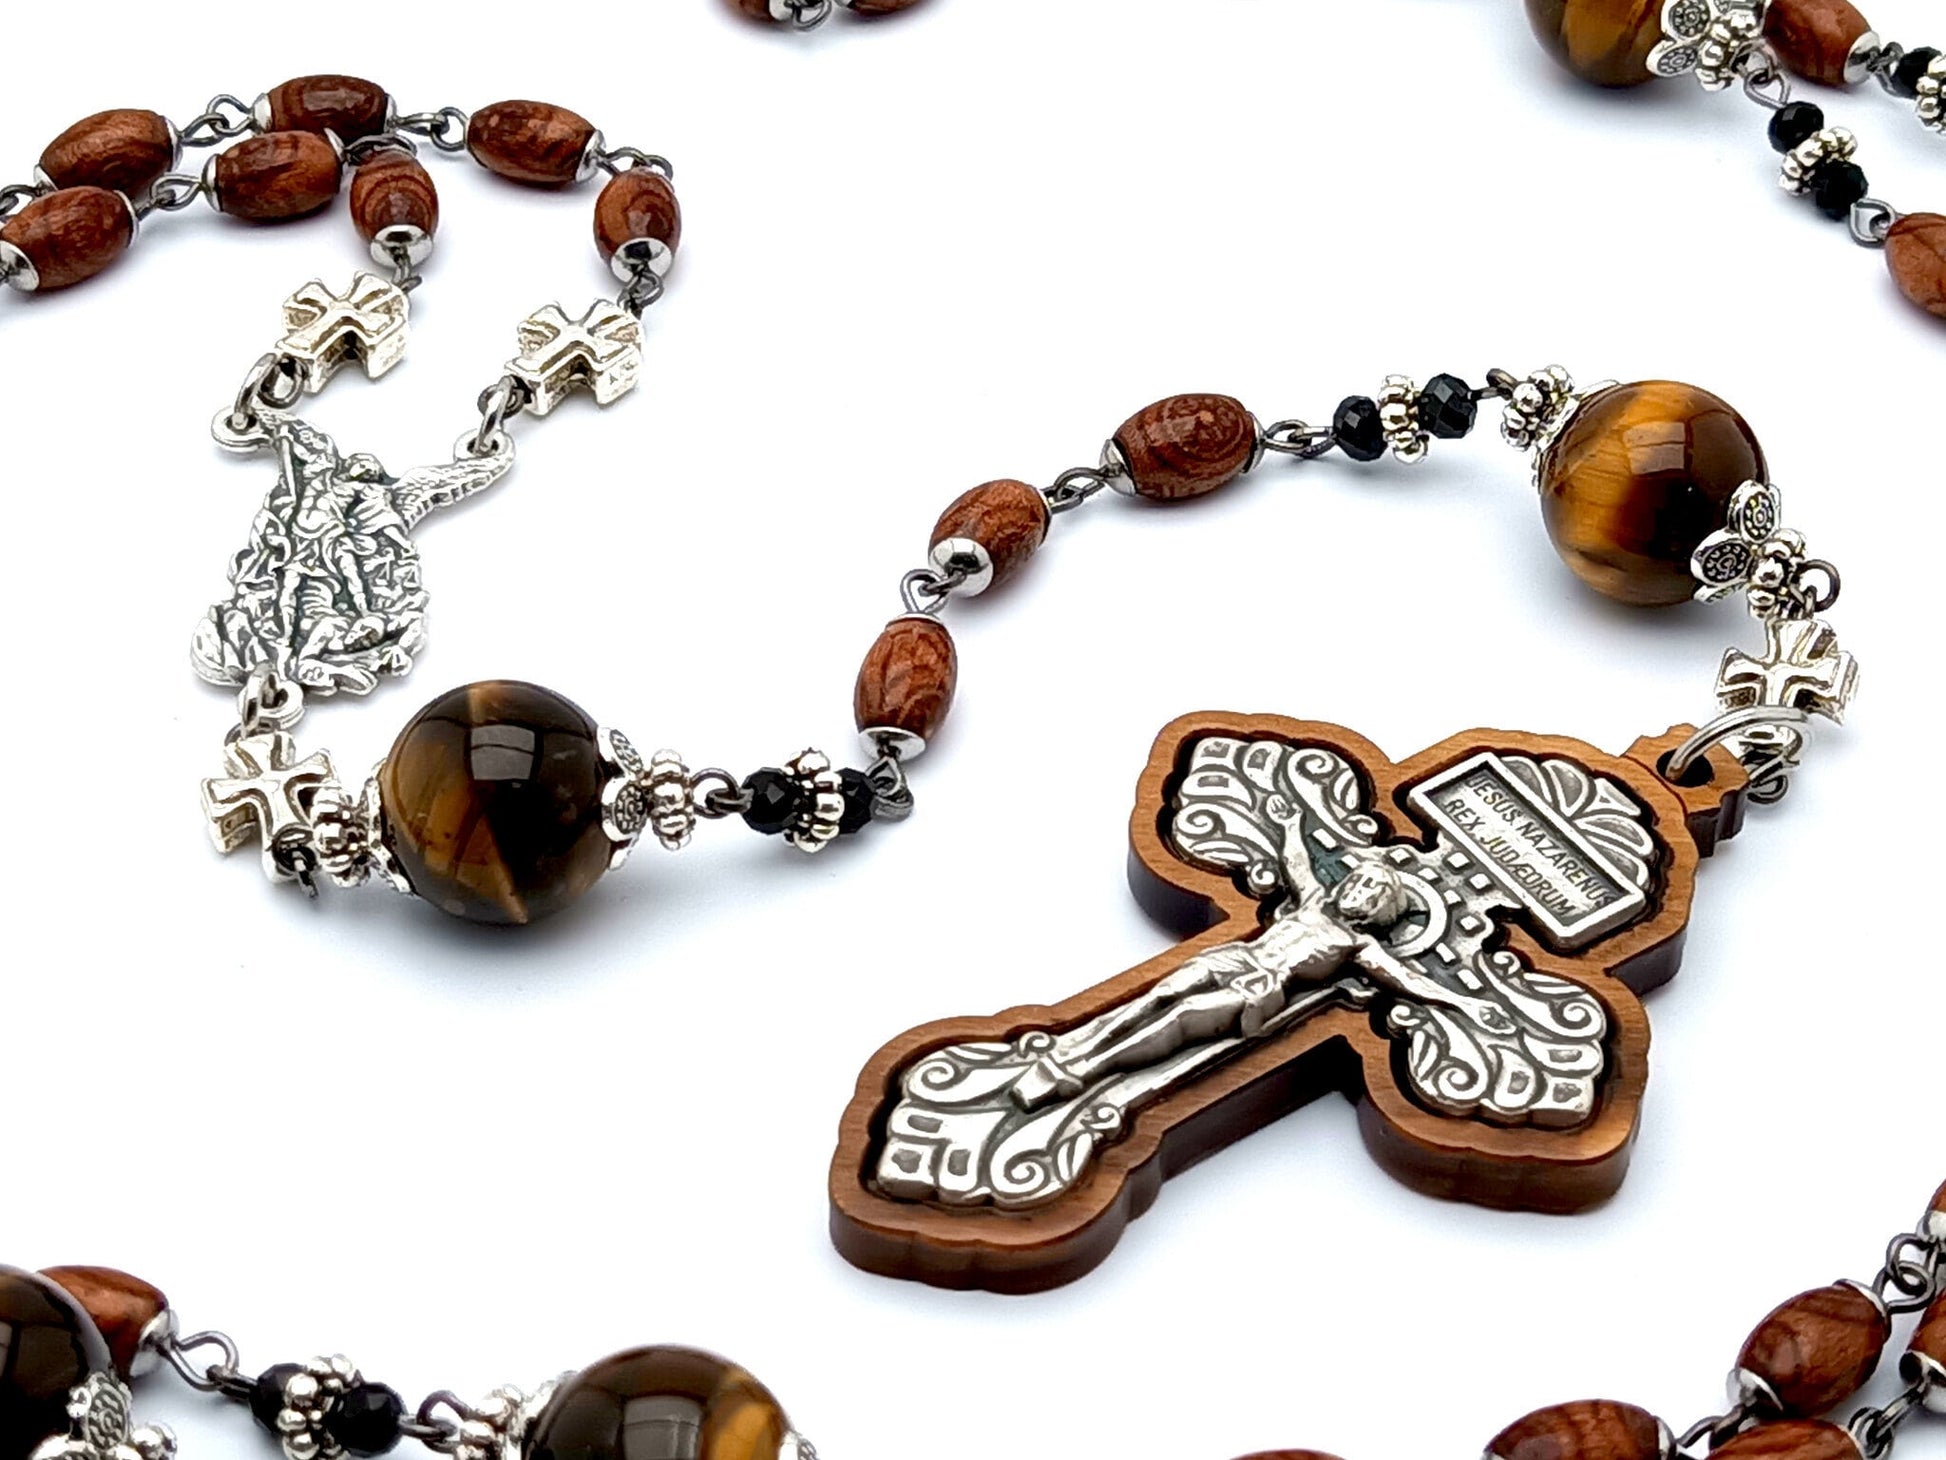 Saint Michael unique rosary beads with tigers eye gemstone and wood rosary beads with wood and silver pardon crucifix.